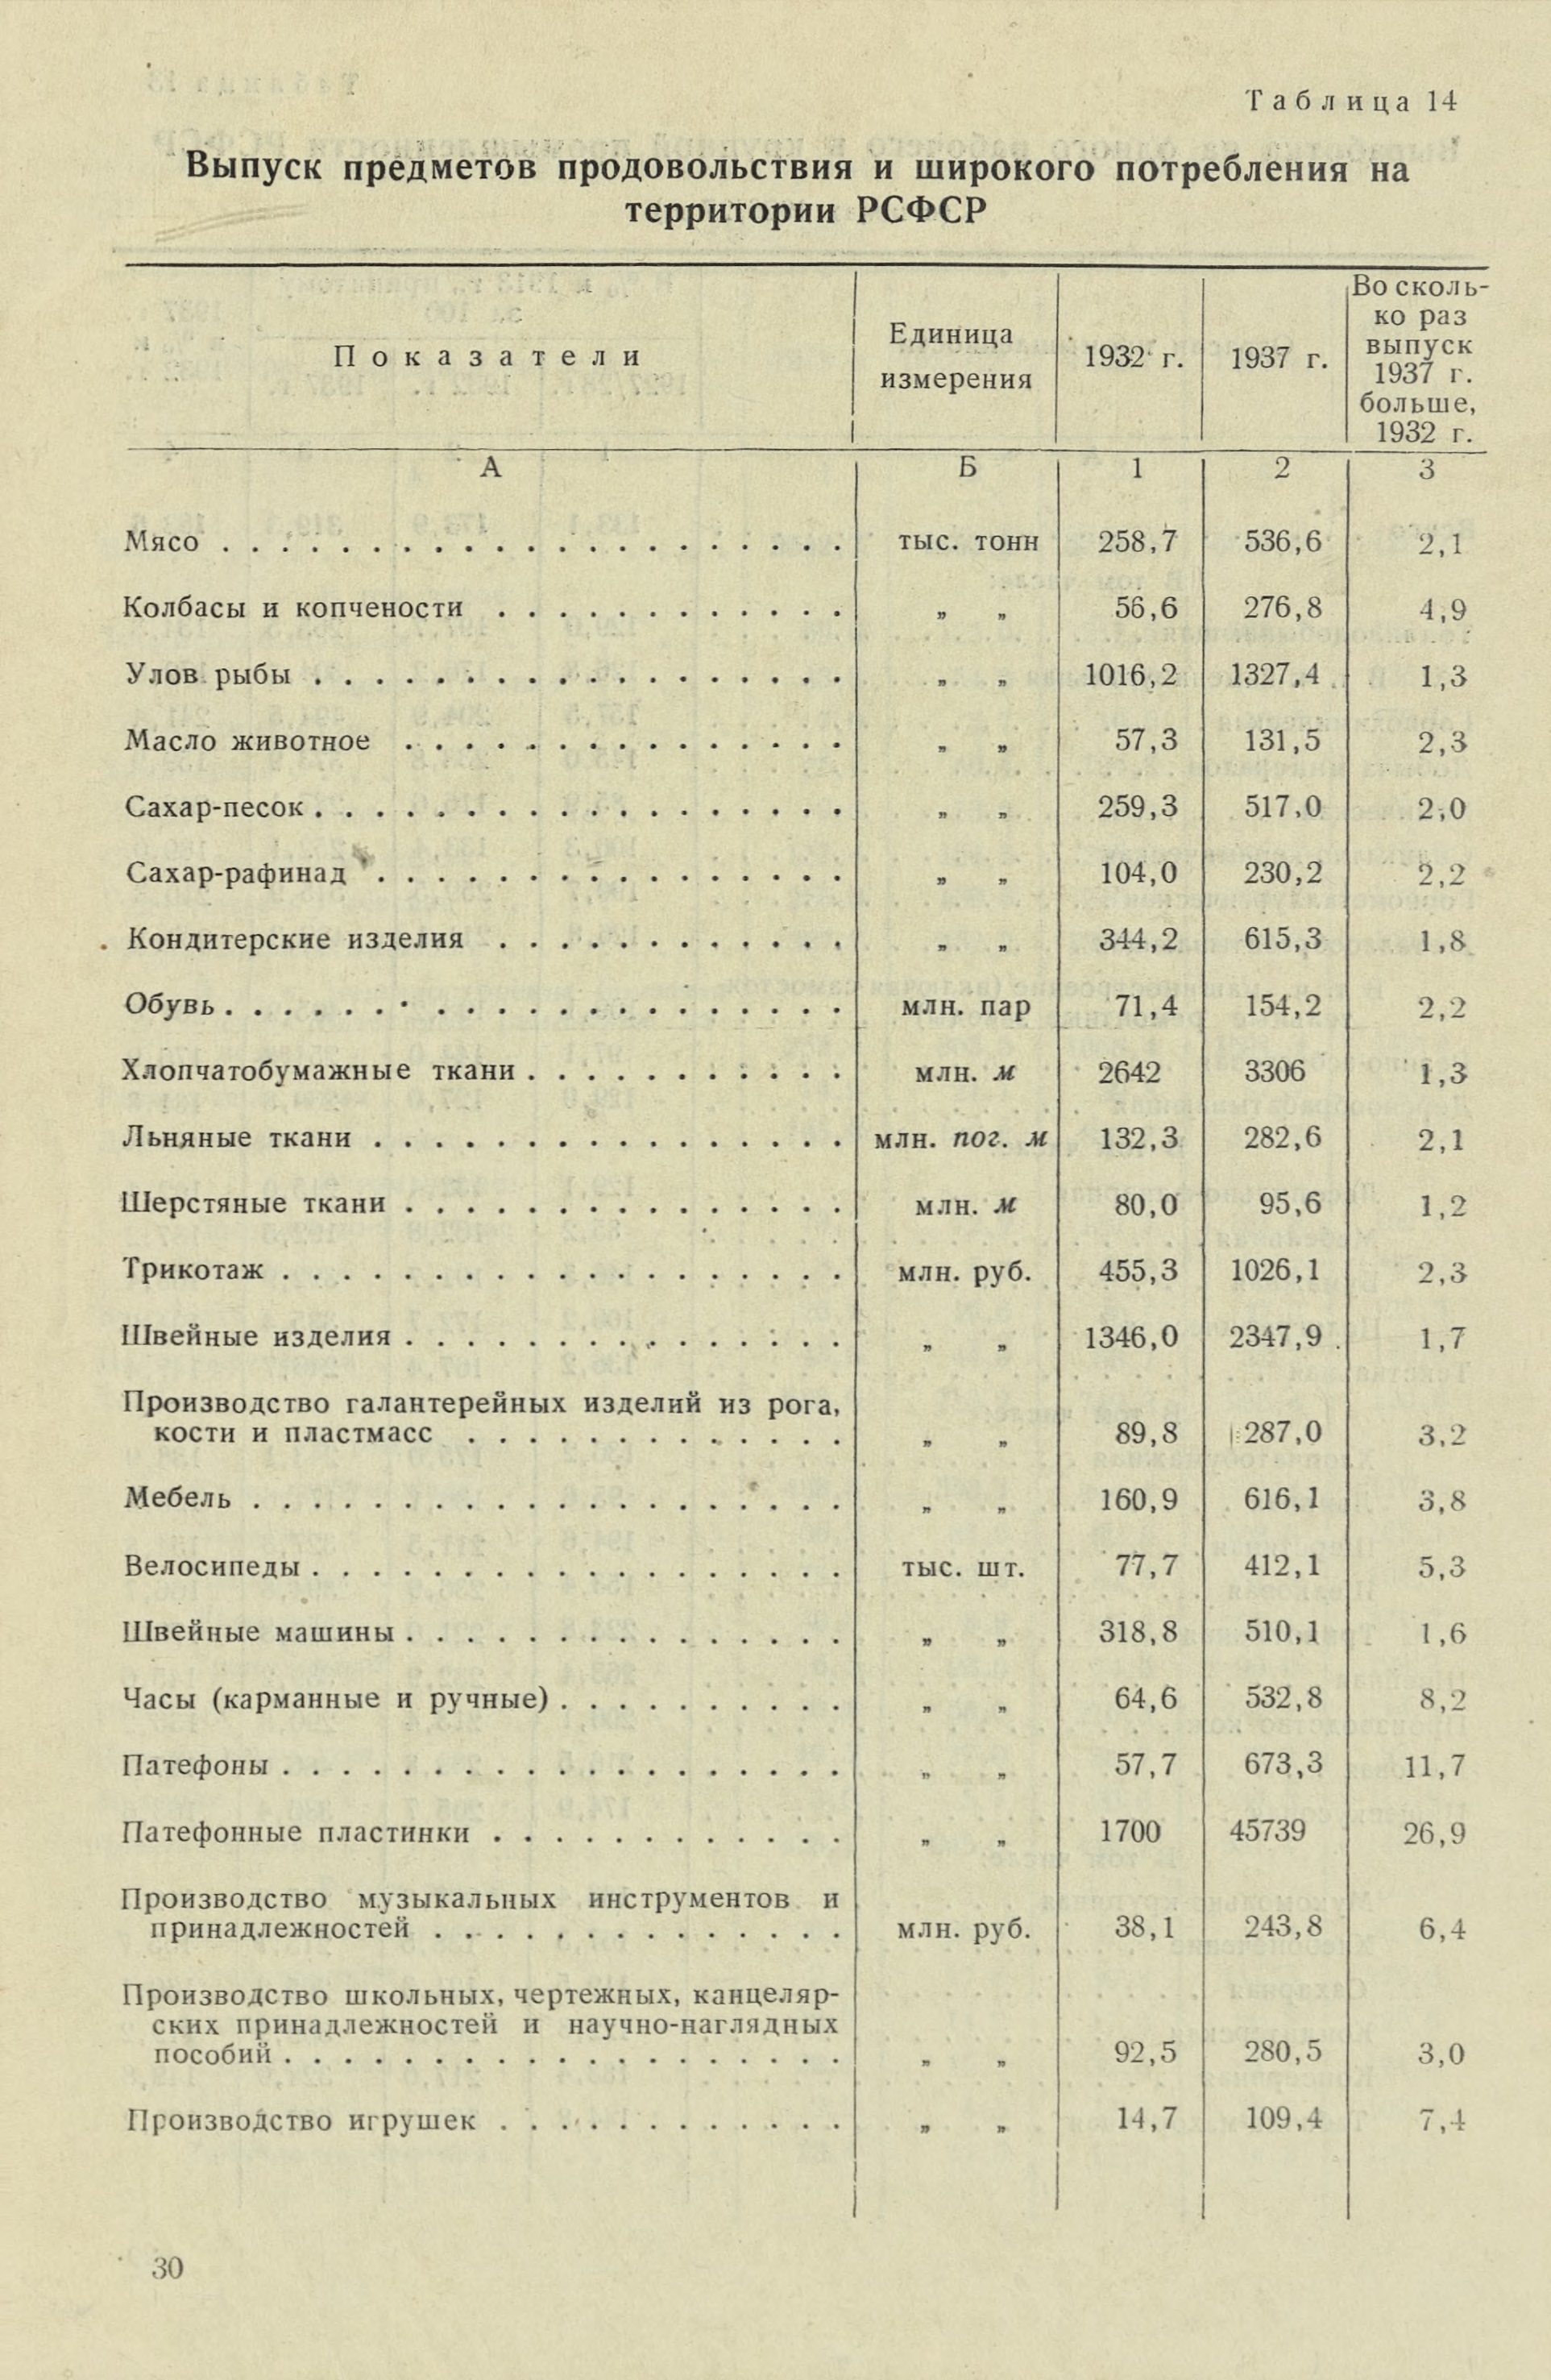 Производство патефонных пластинок, патефонов и иголок (1937 год в сравнении с 1932 годом)